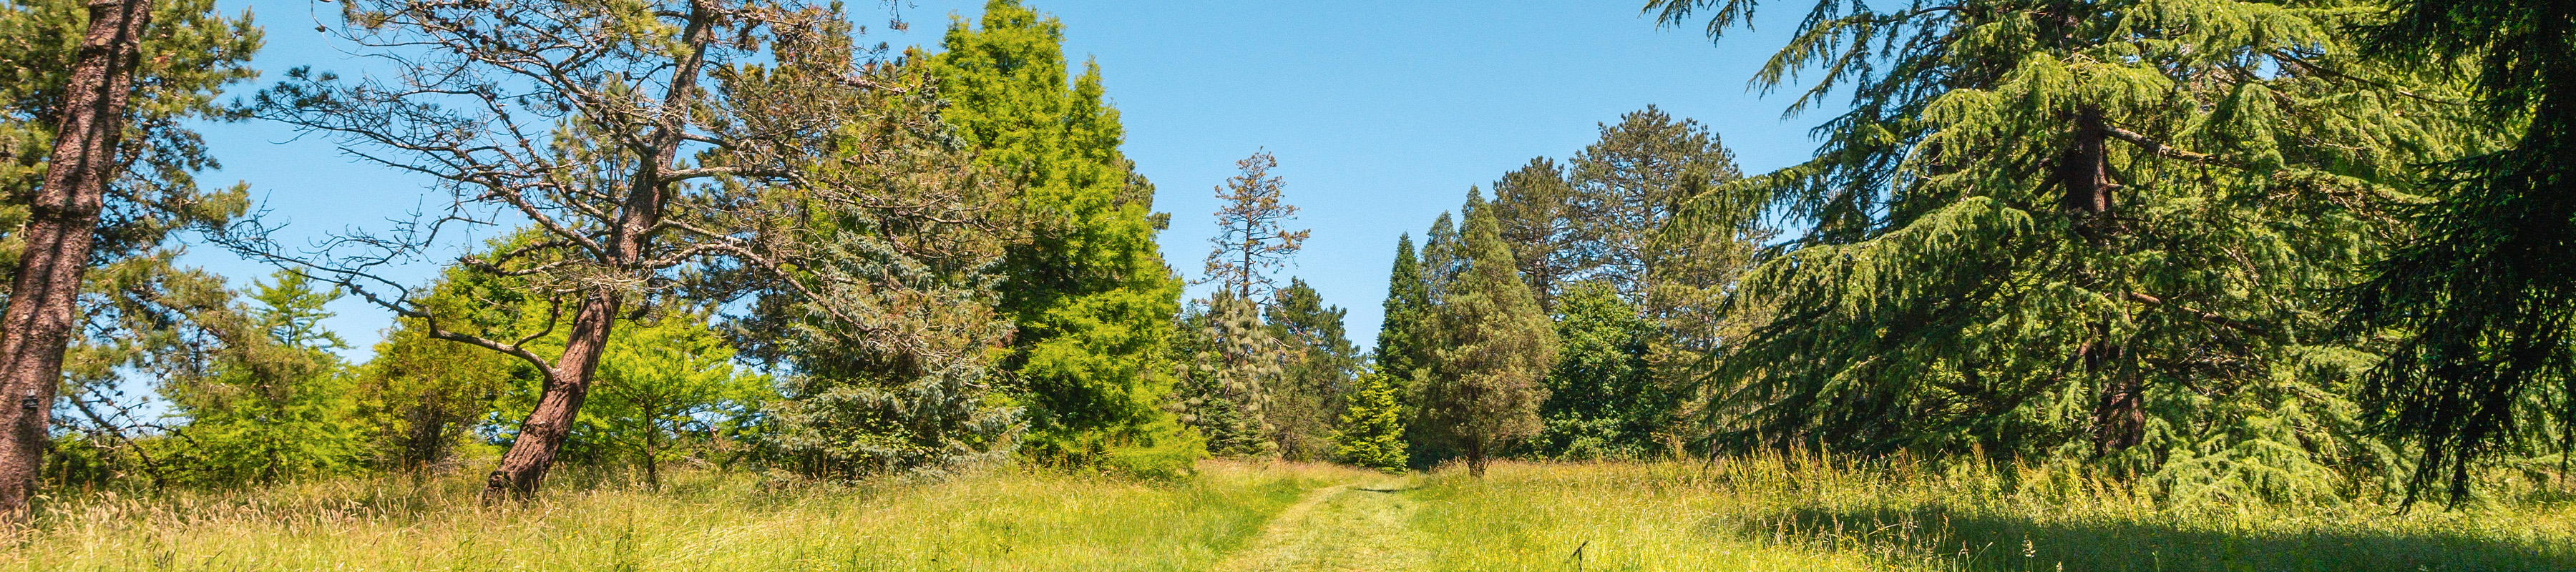 A grassy path through pine trees